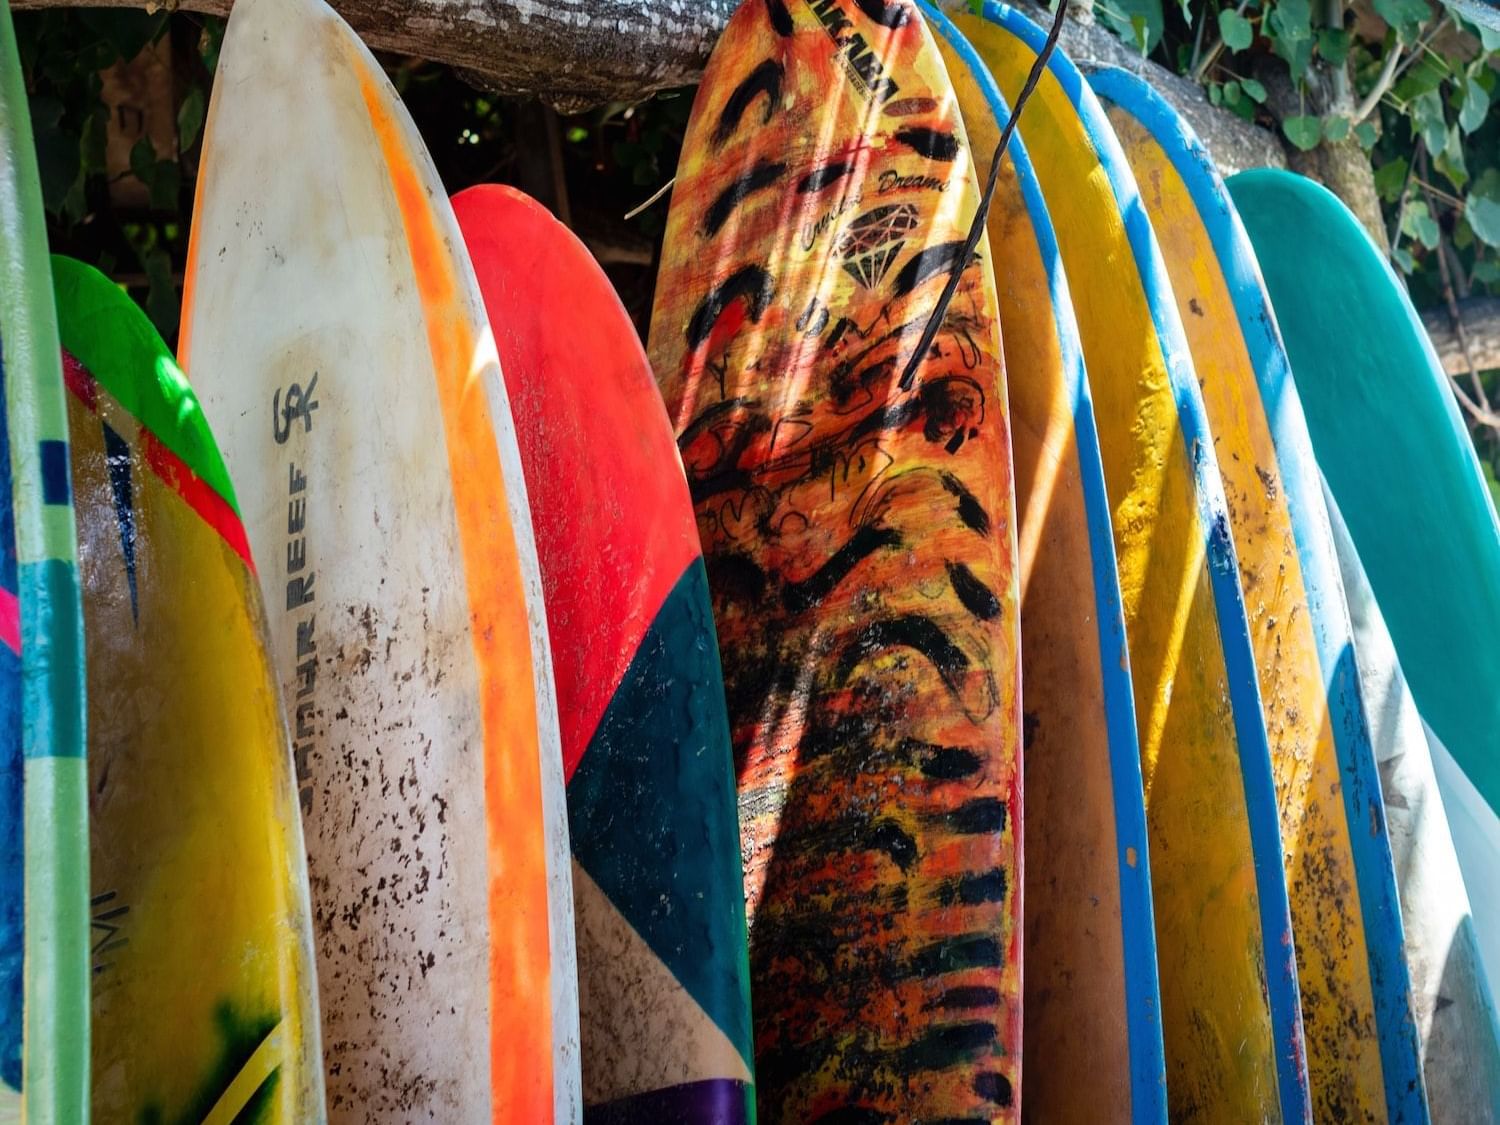 Surfboards lined up near The Rockaway Hotel